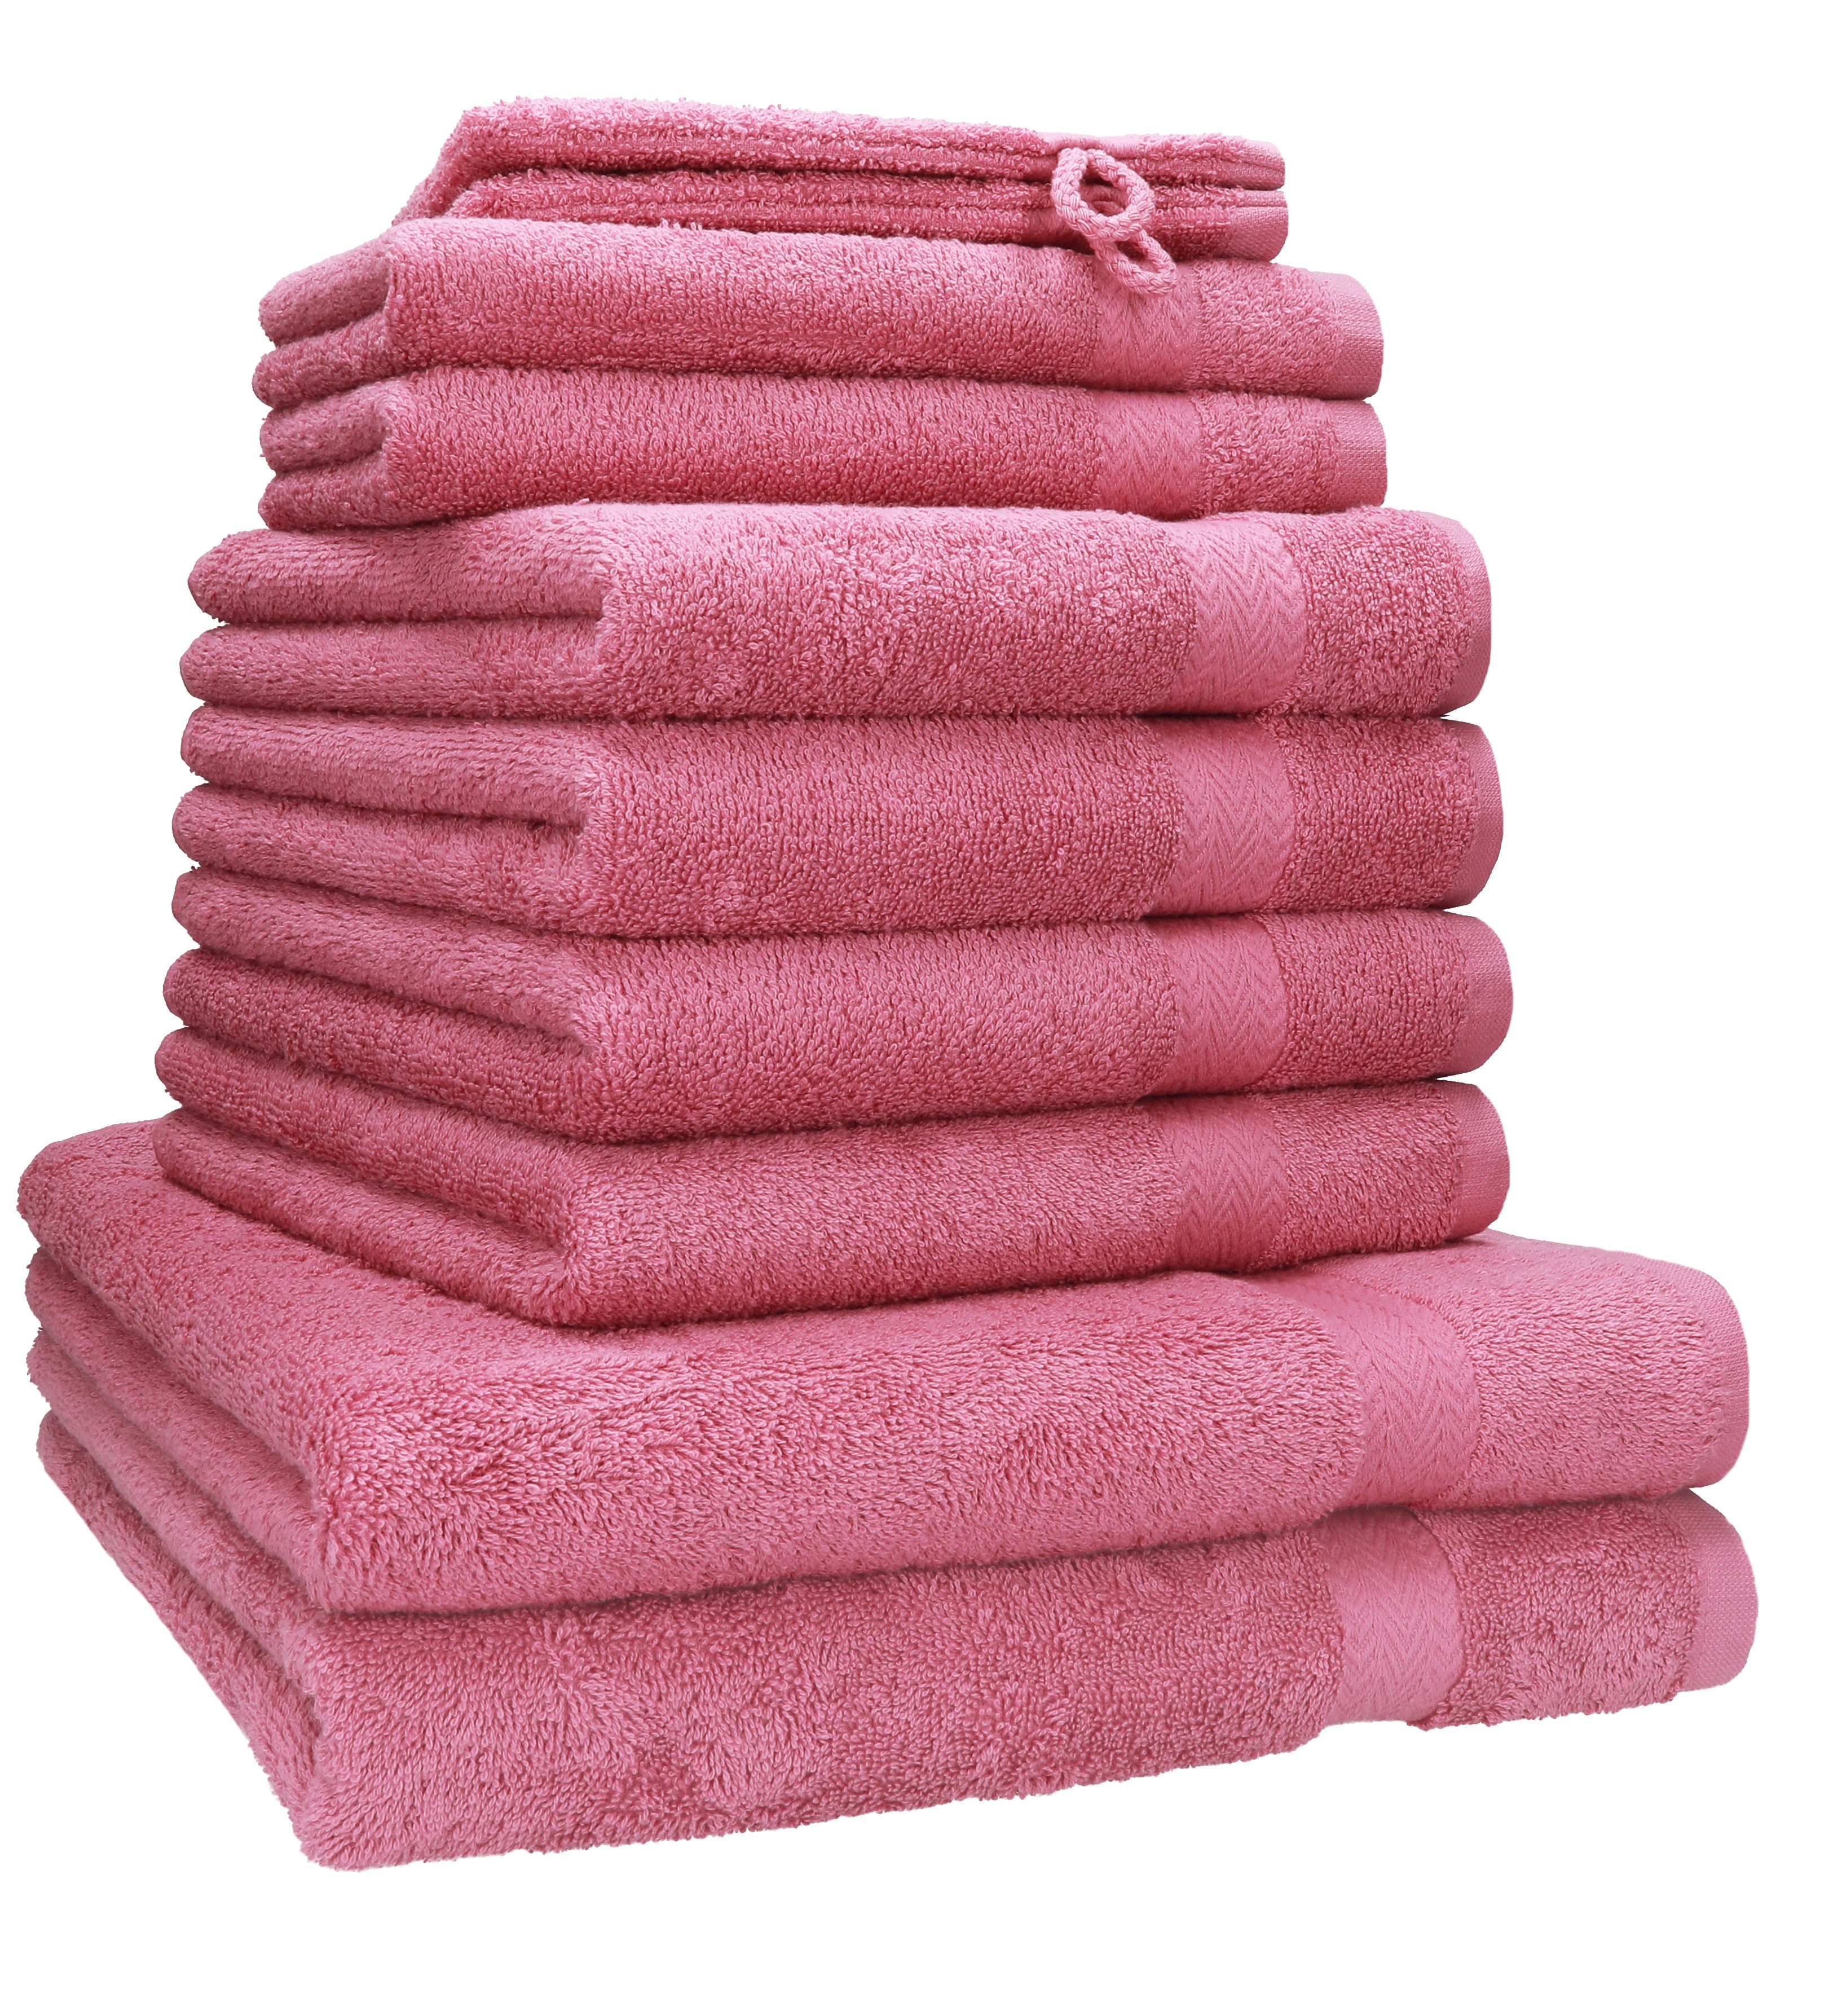 Handtuch-Set in rosa online kaufen | OTTO